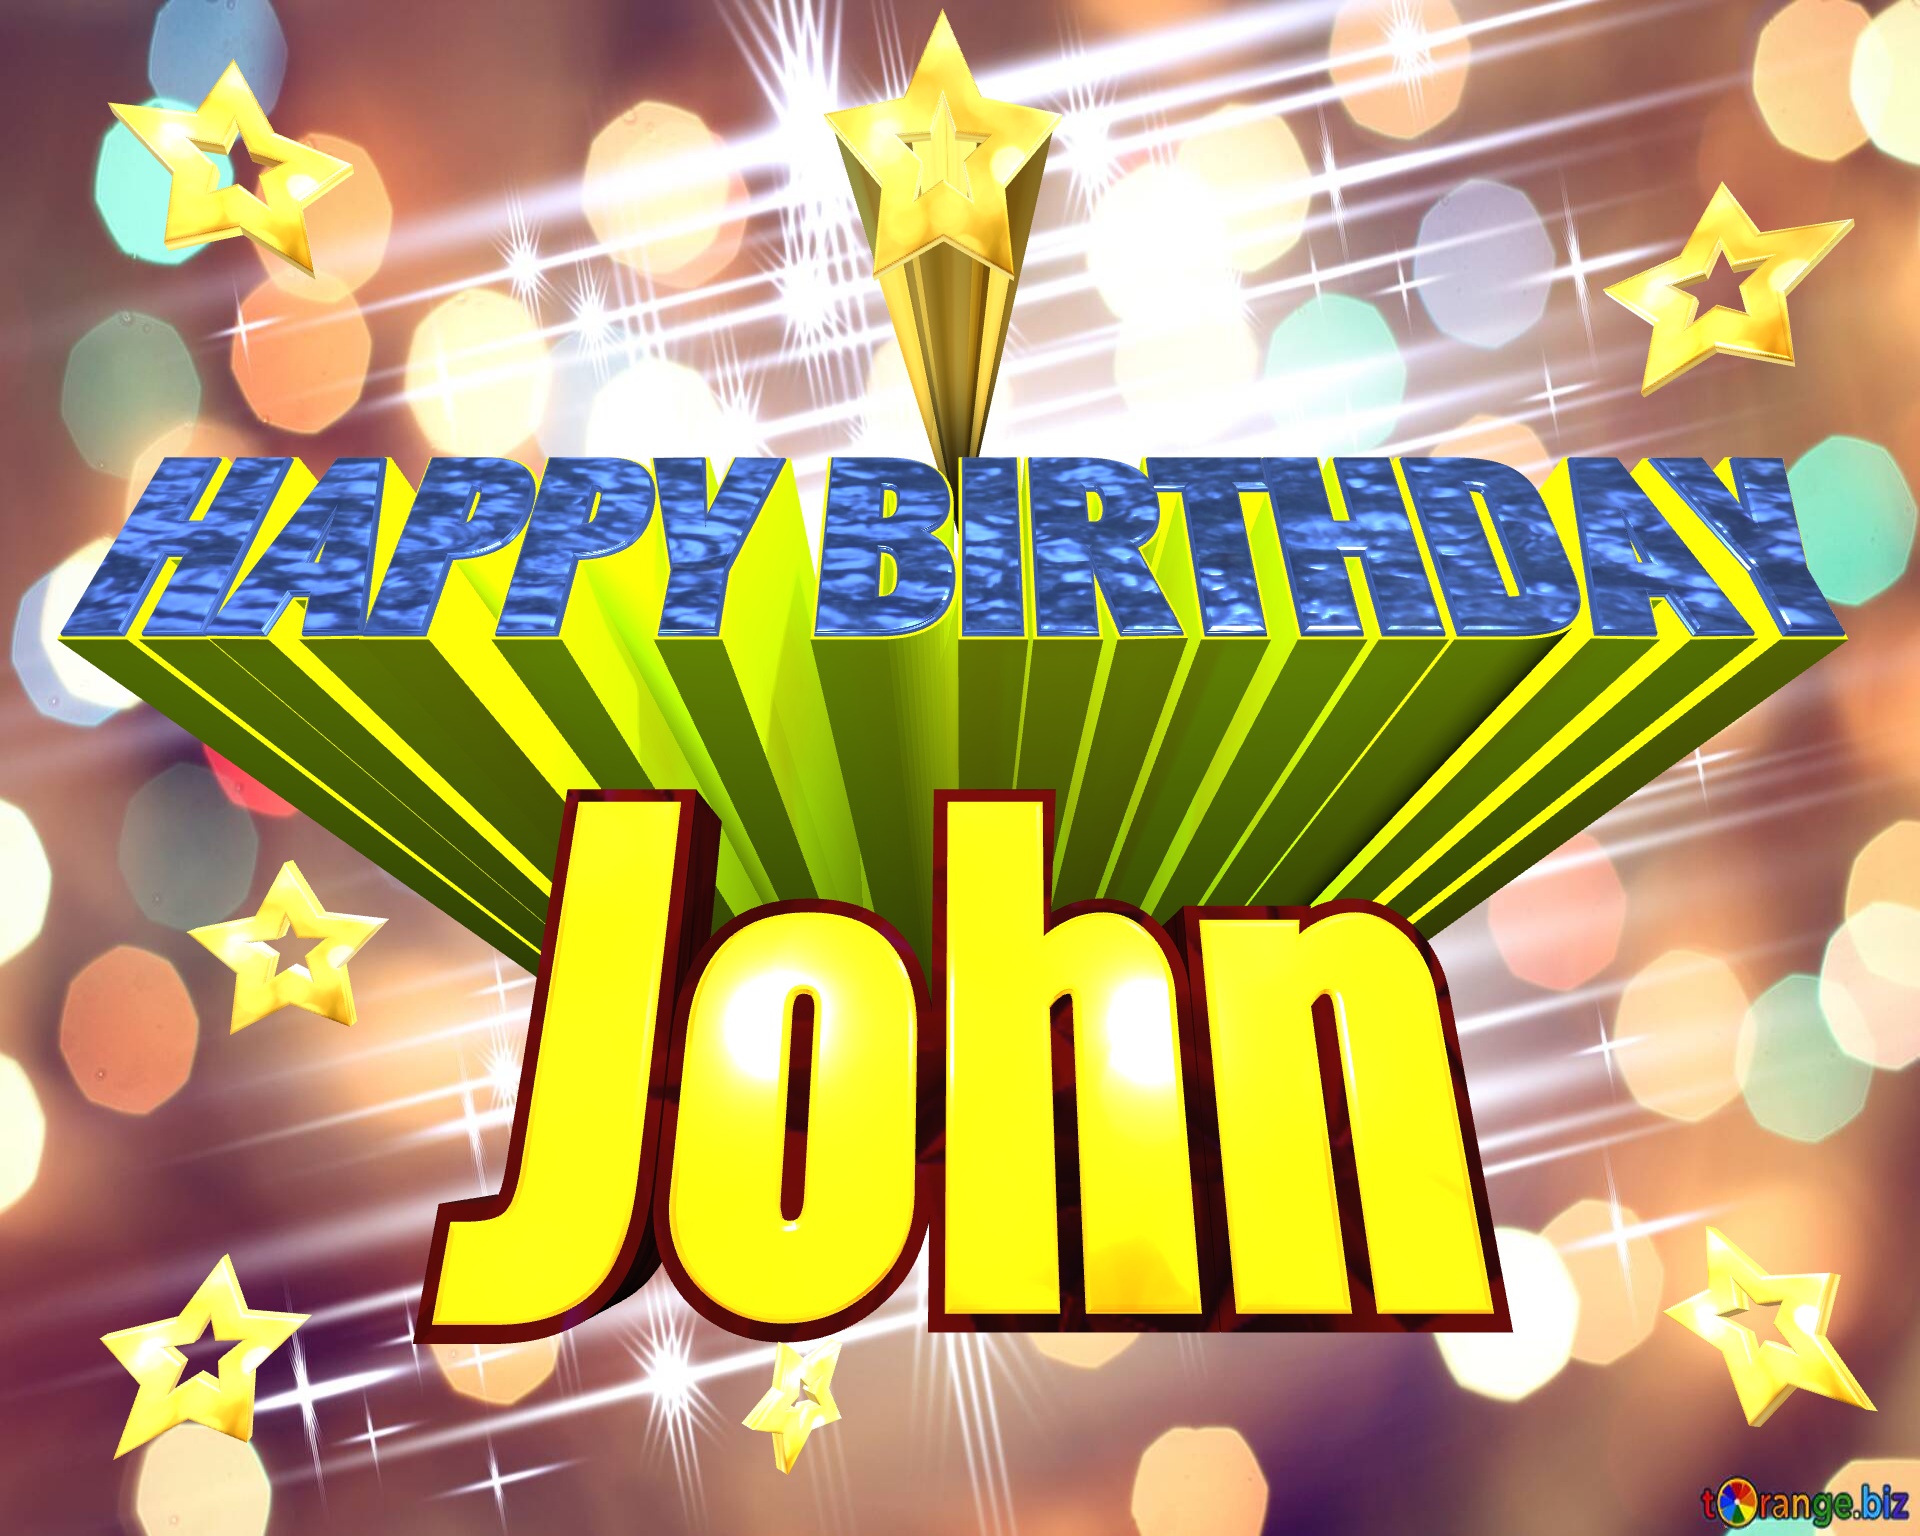 John Animated gif Happy Birthday Elegant shiny white bright background fog bokeh №0